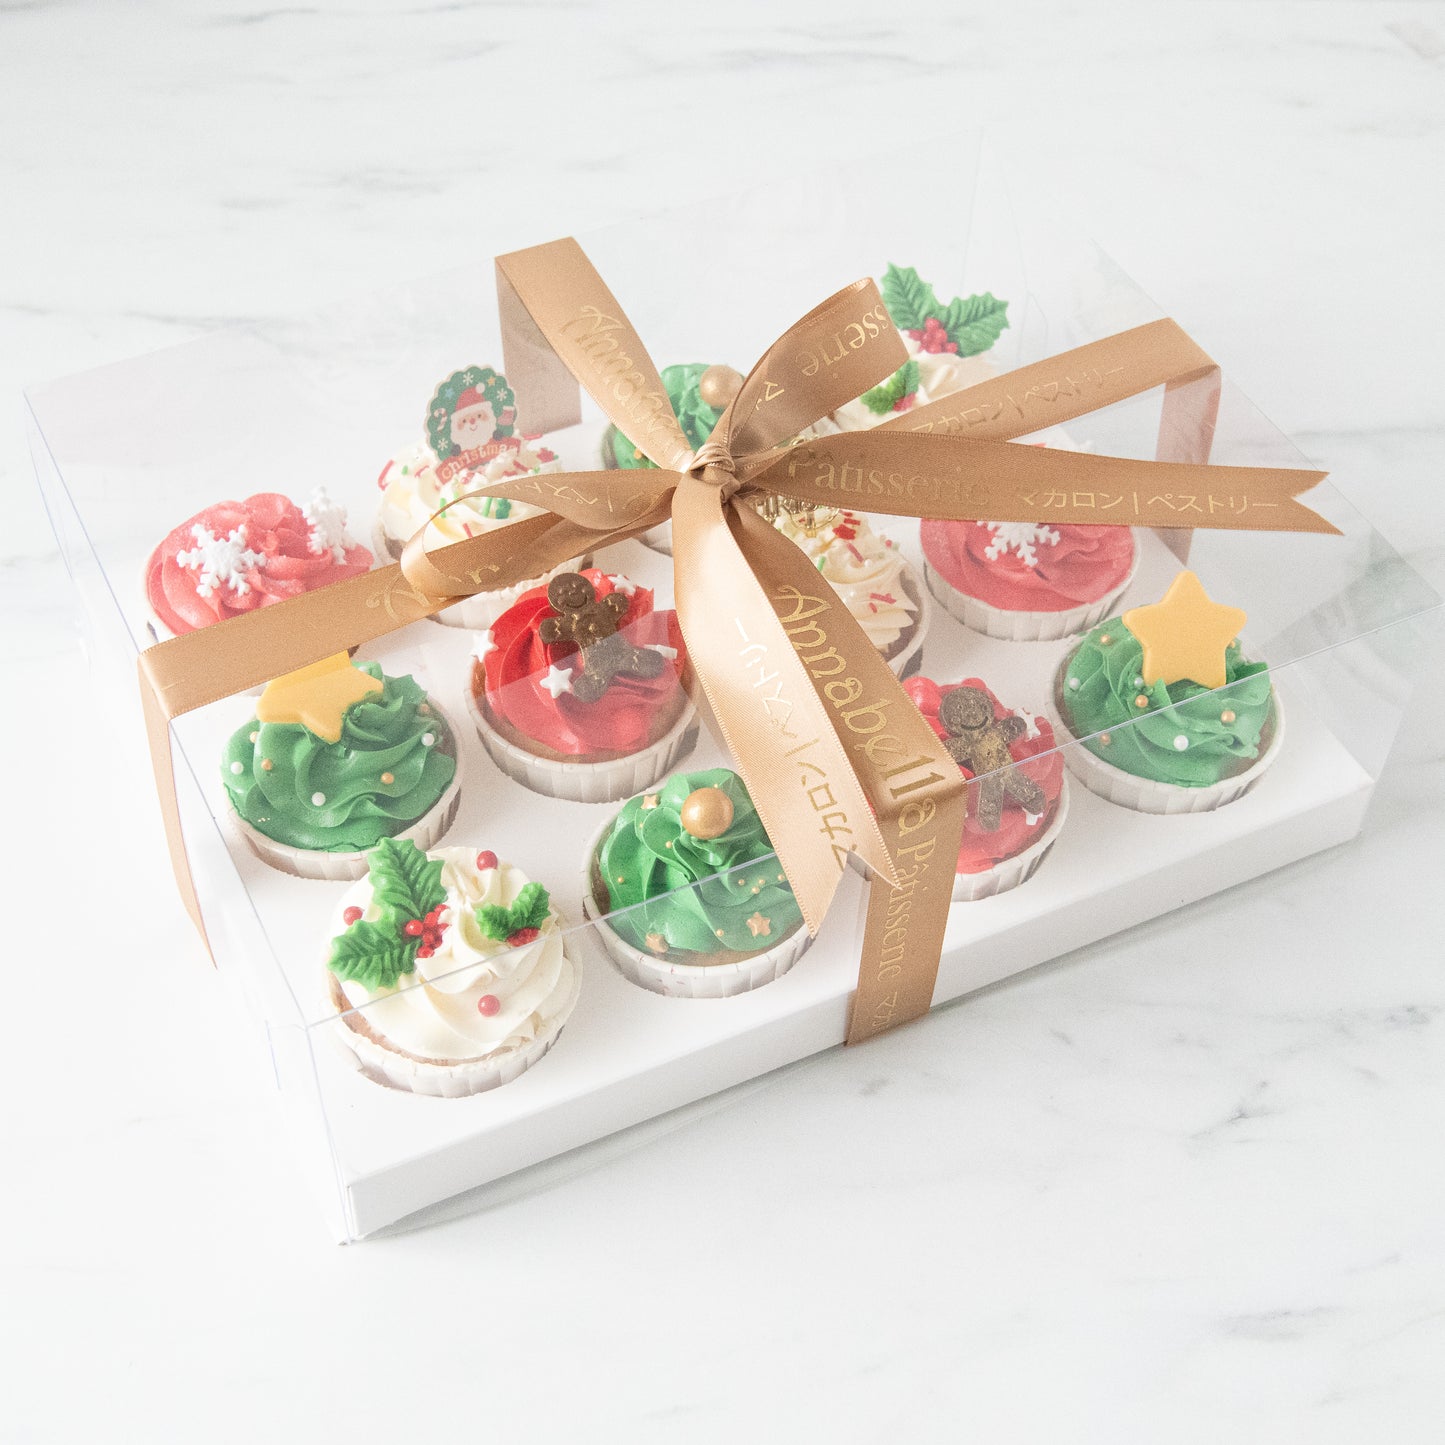 Ho ho ho! | Merry Christmas | A Vibrant Christmas 12pcs Cupcake in Gift Box | $68.80 Nett